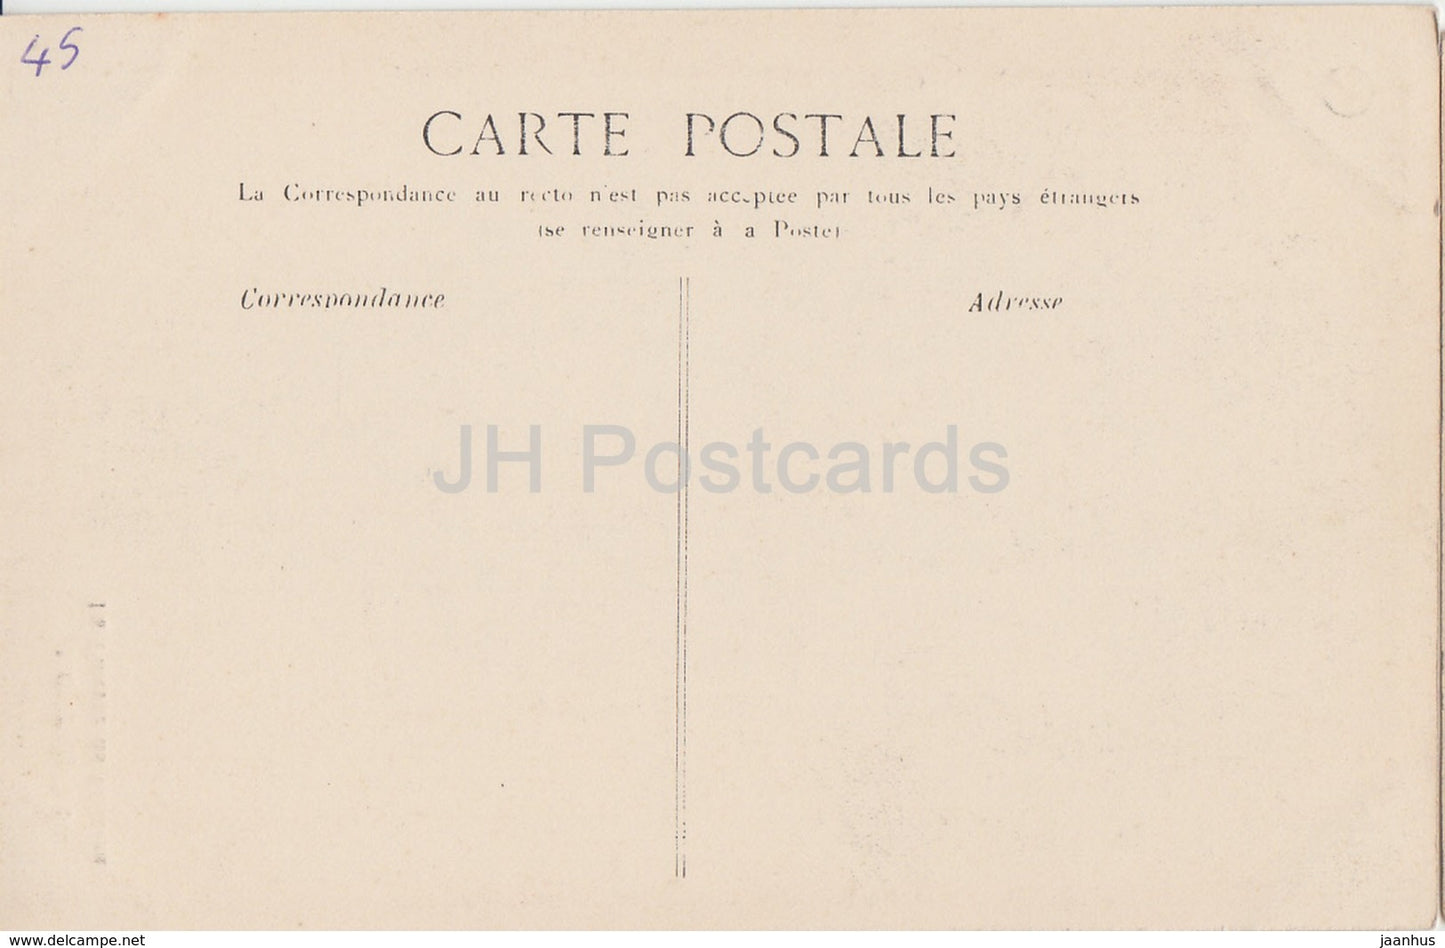 Montargis - La Poterne du Château - château - carte postale ancienne - France - inutilisée